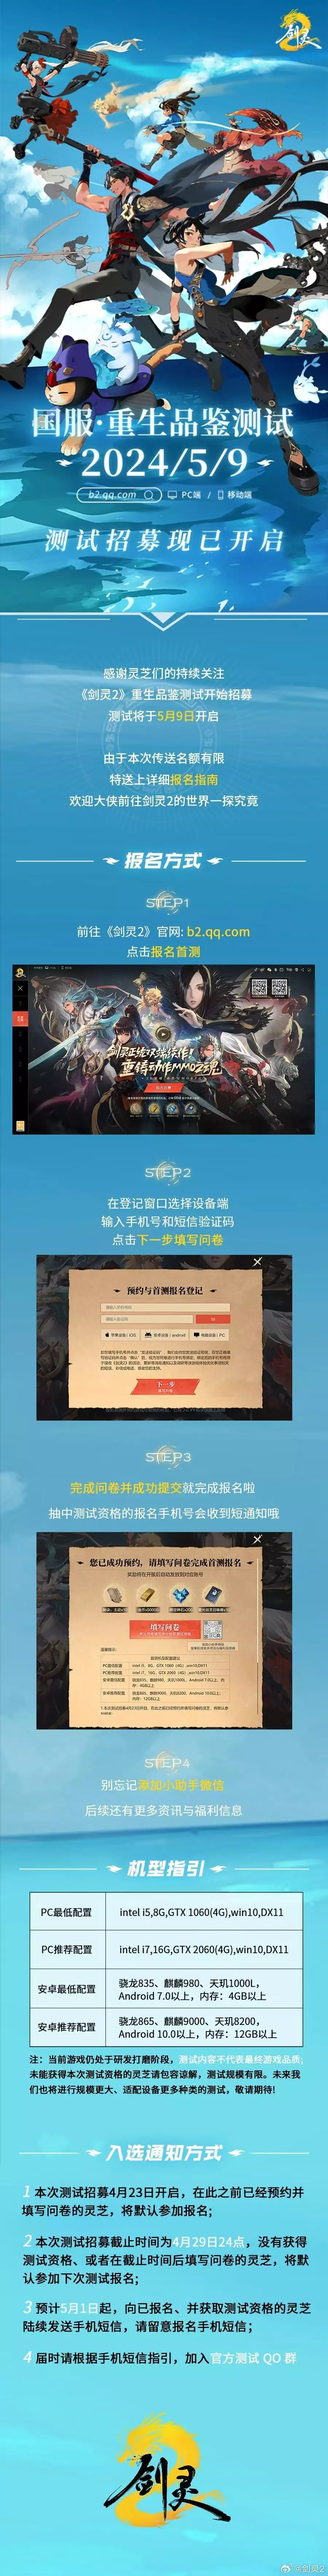 腾讯游戏《剑灵2》新视频国服首测招募开启“爸